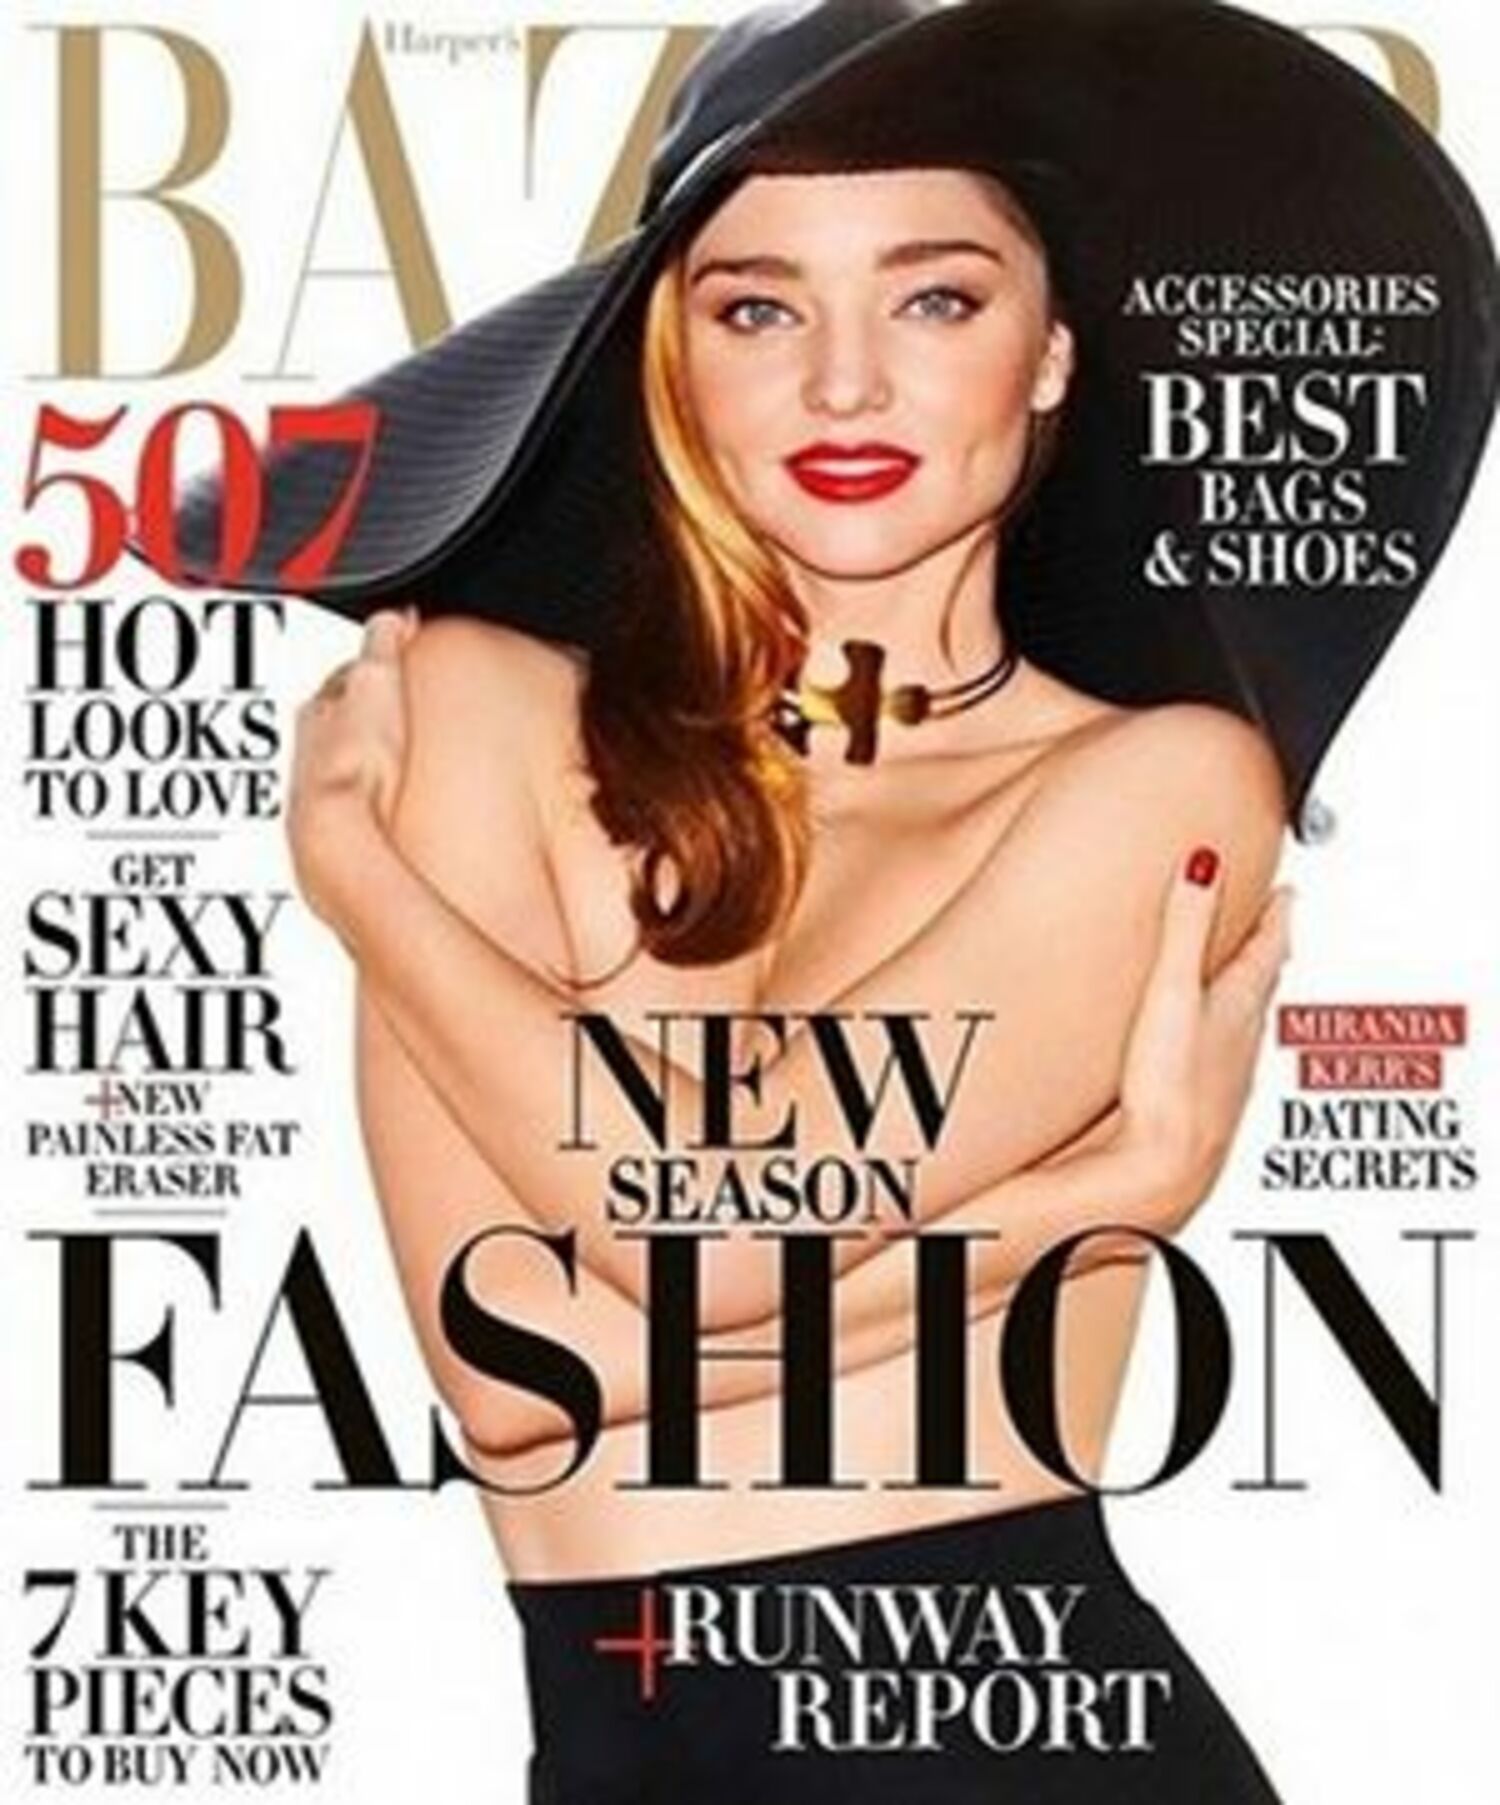 「裸が大好き♪」ミランダ・カーが雑誌の表紙でトップレスの画像